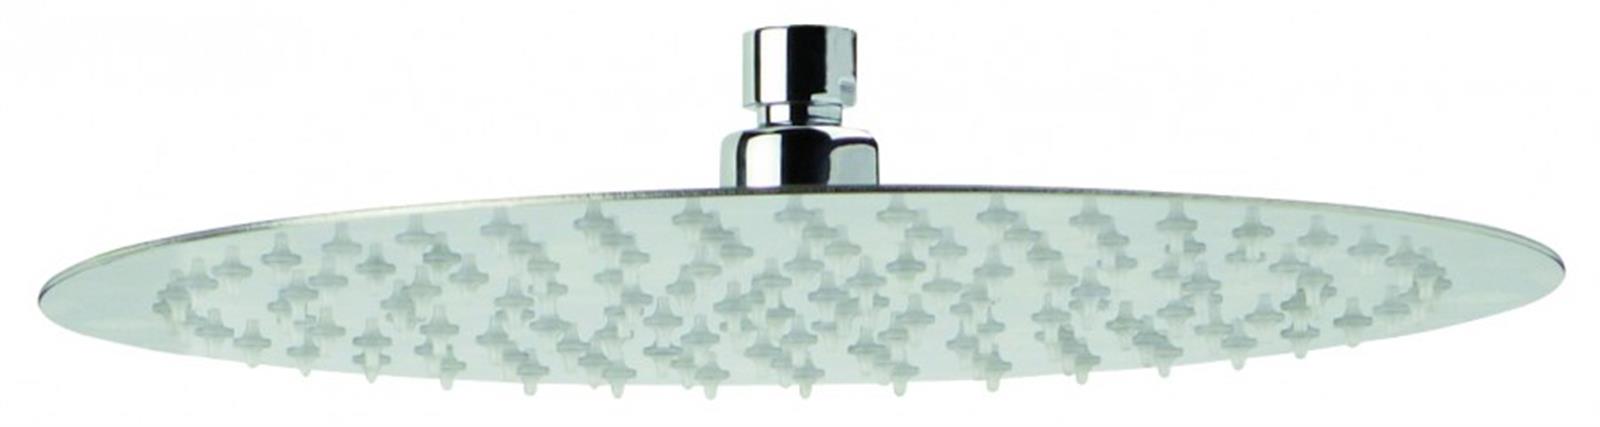 Pommeau de douche plafond rond - Diamètre 200 mm - Chromé